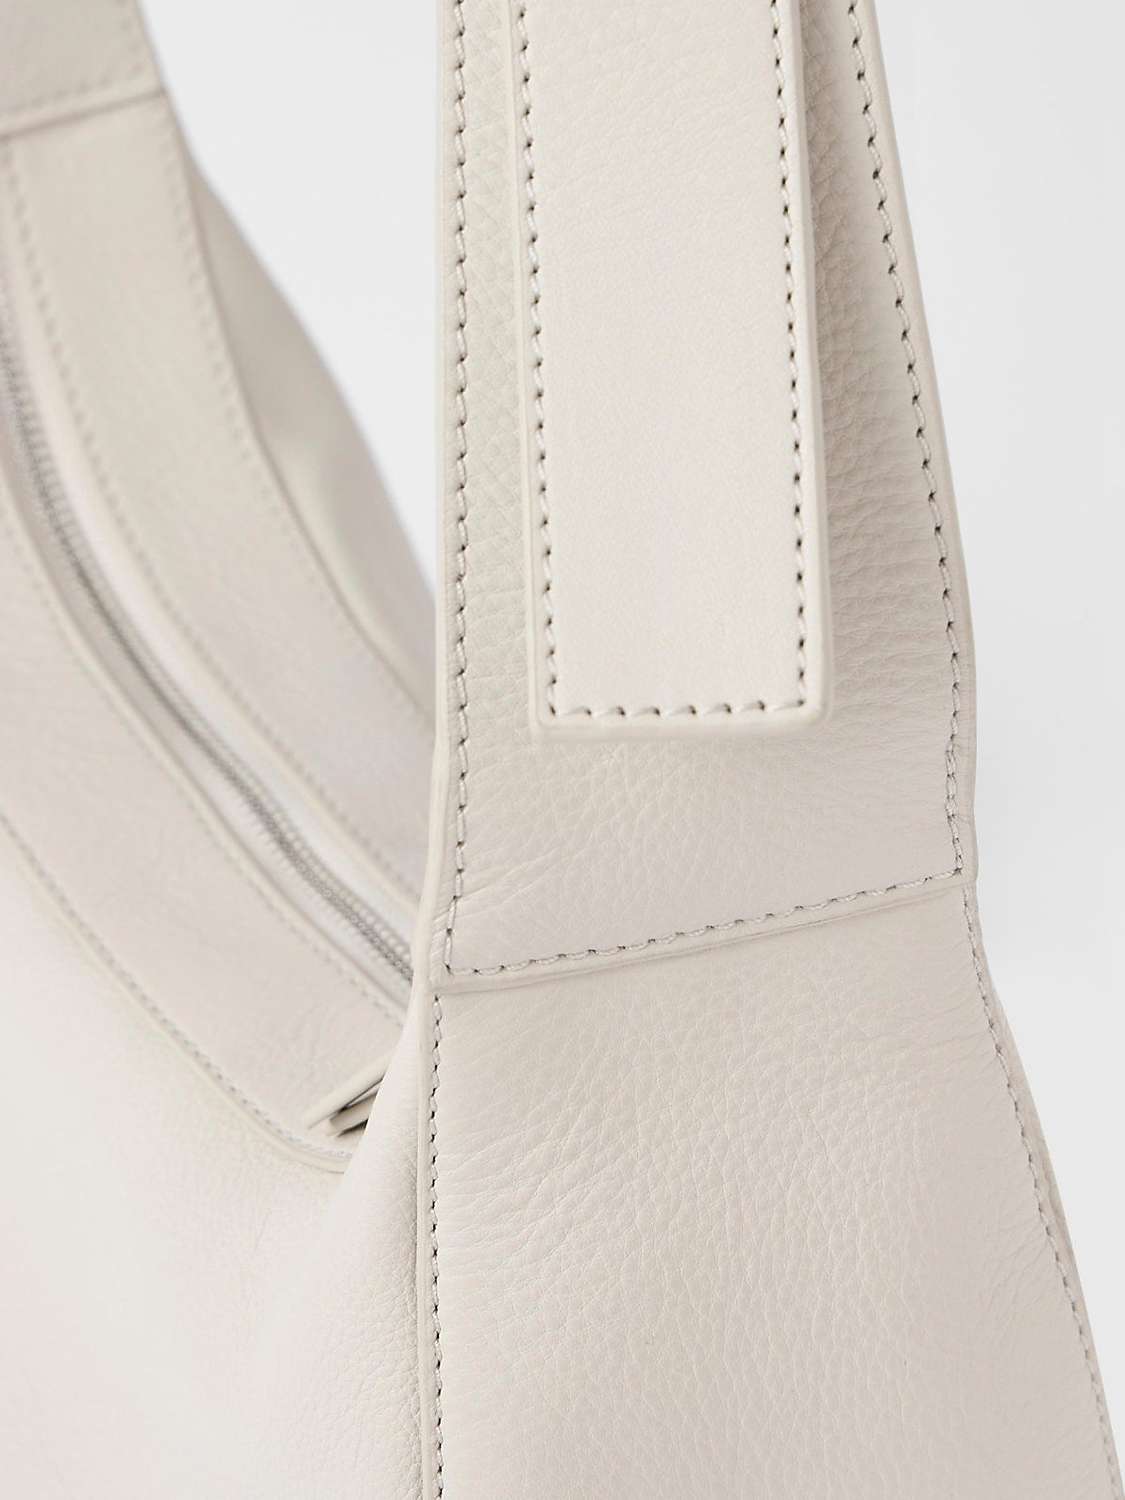 Buy Mint Velvet Leather Cross Body Bag, Natural Online at johnlewis.com